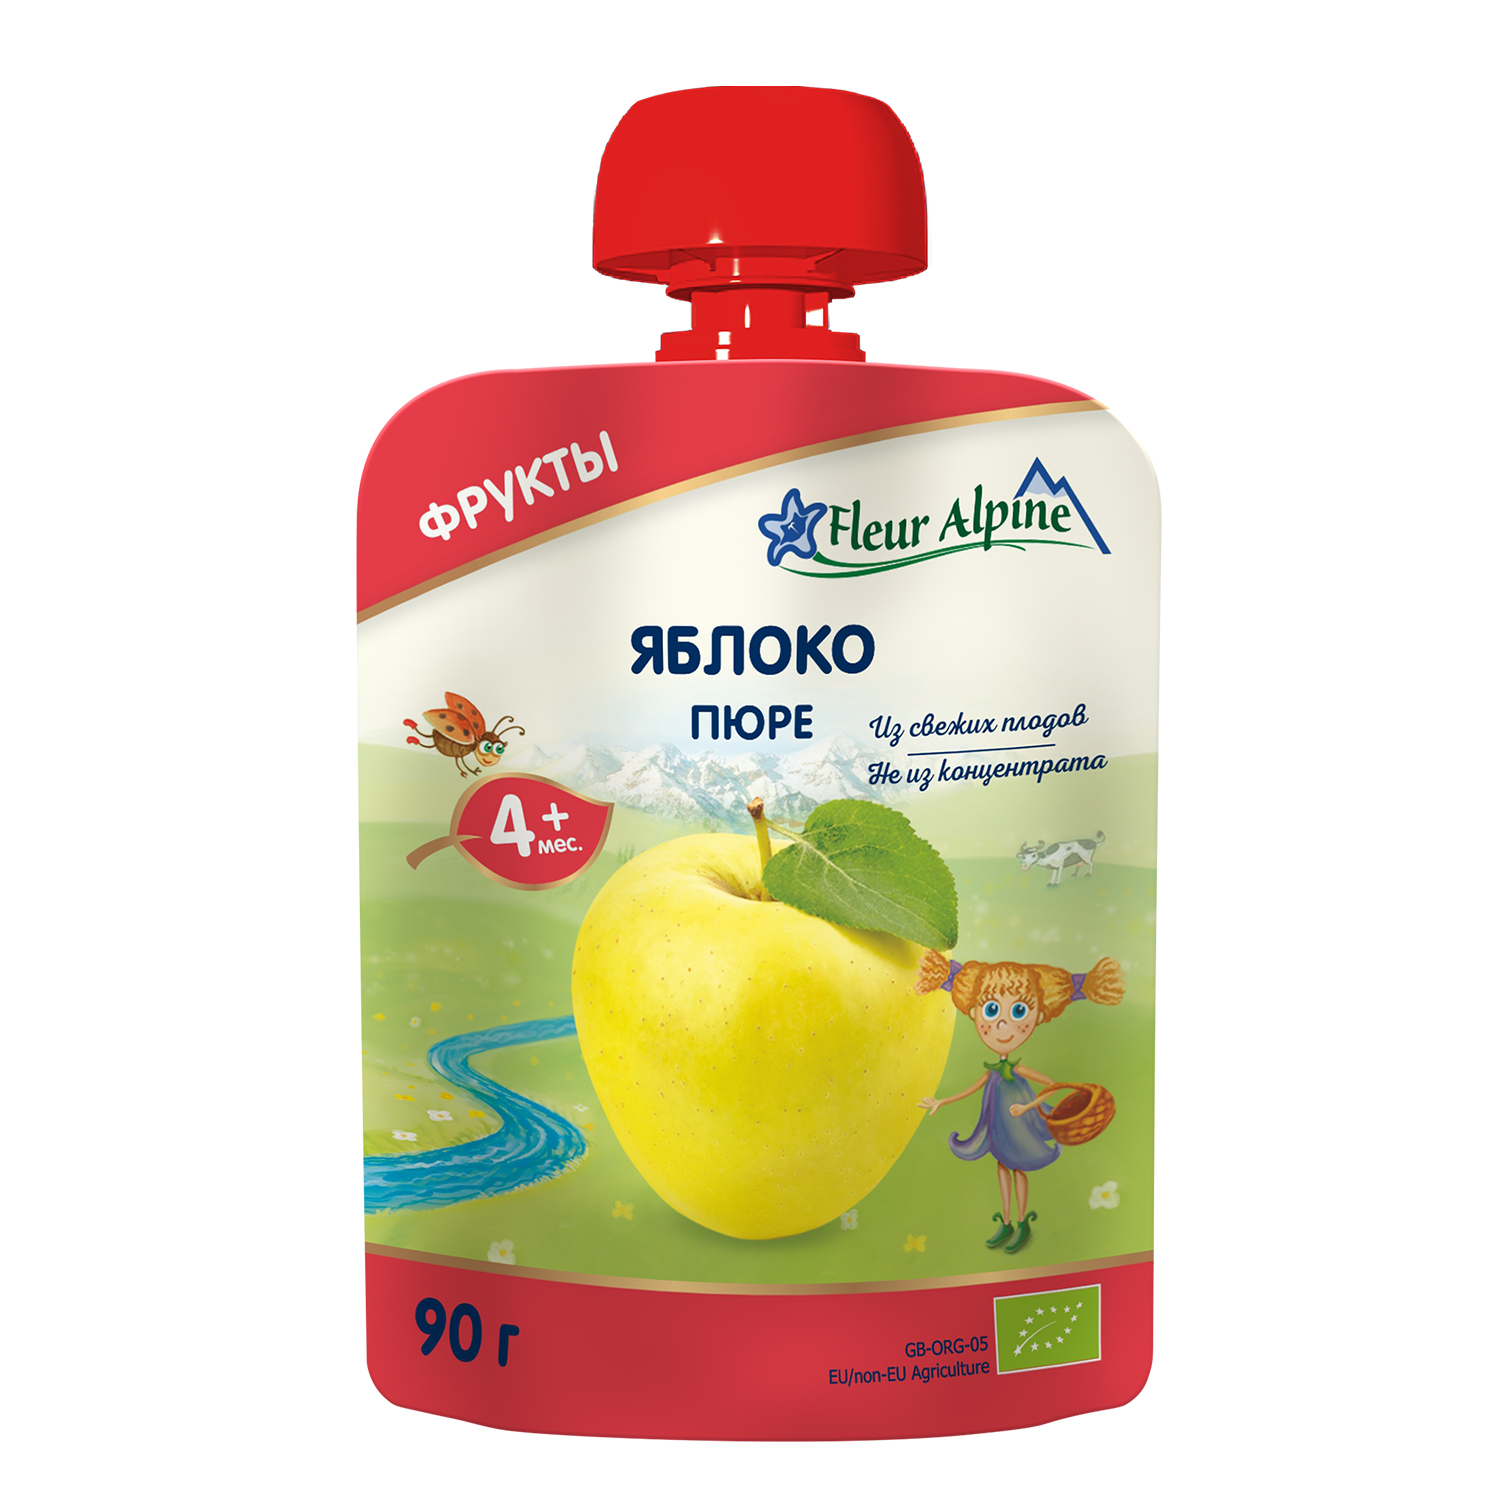 Пюре детское Fleur Alpine ЯБЛОКО, с 4 месяцев, 90 г пюре детское fleur alpine яблоко с 4 месяцев 90 г